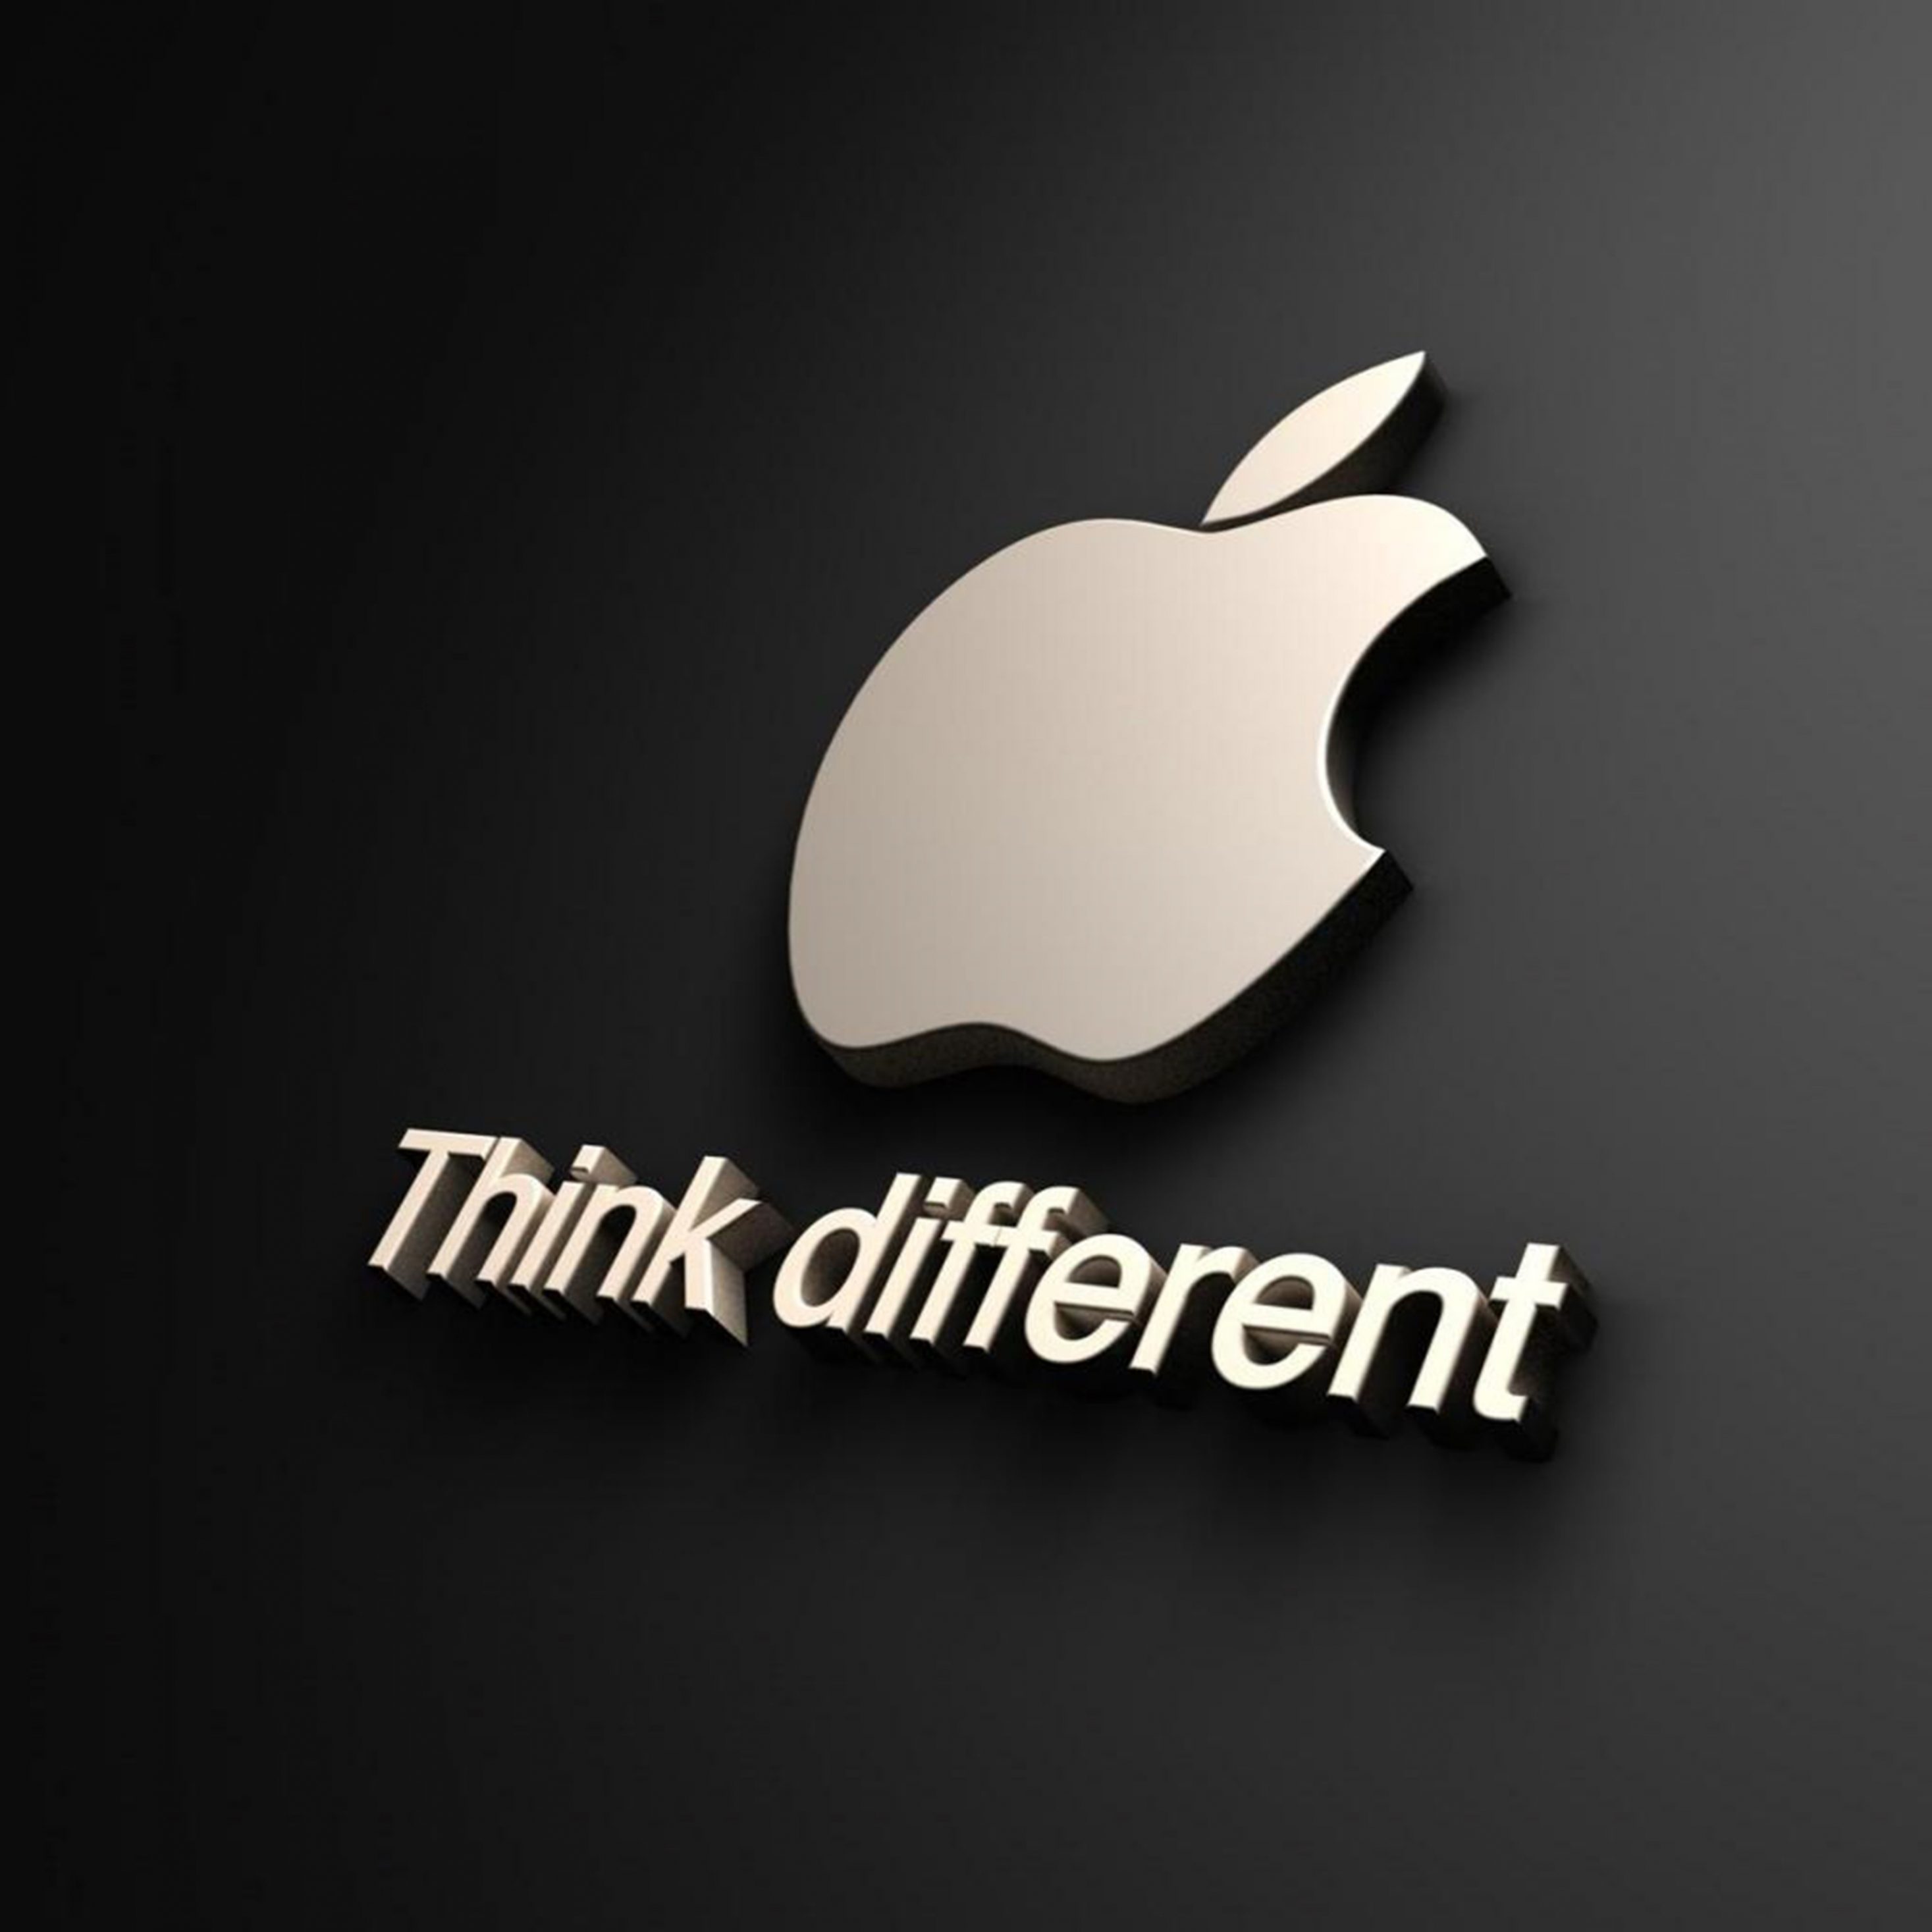 2934x2934 iOS iPad wallpaper 4k Apple Think Different Ipad Wallpaper 2934x2934 pixels resolution